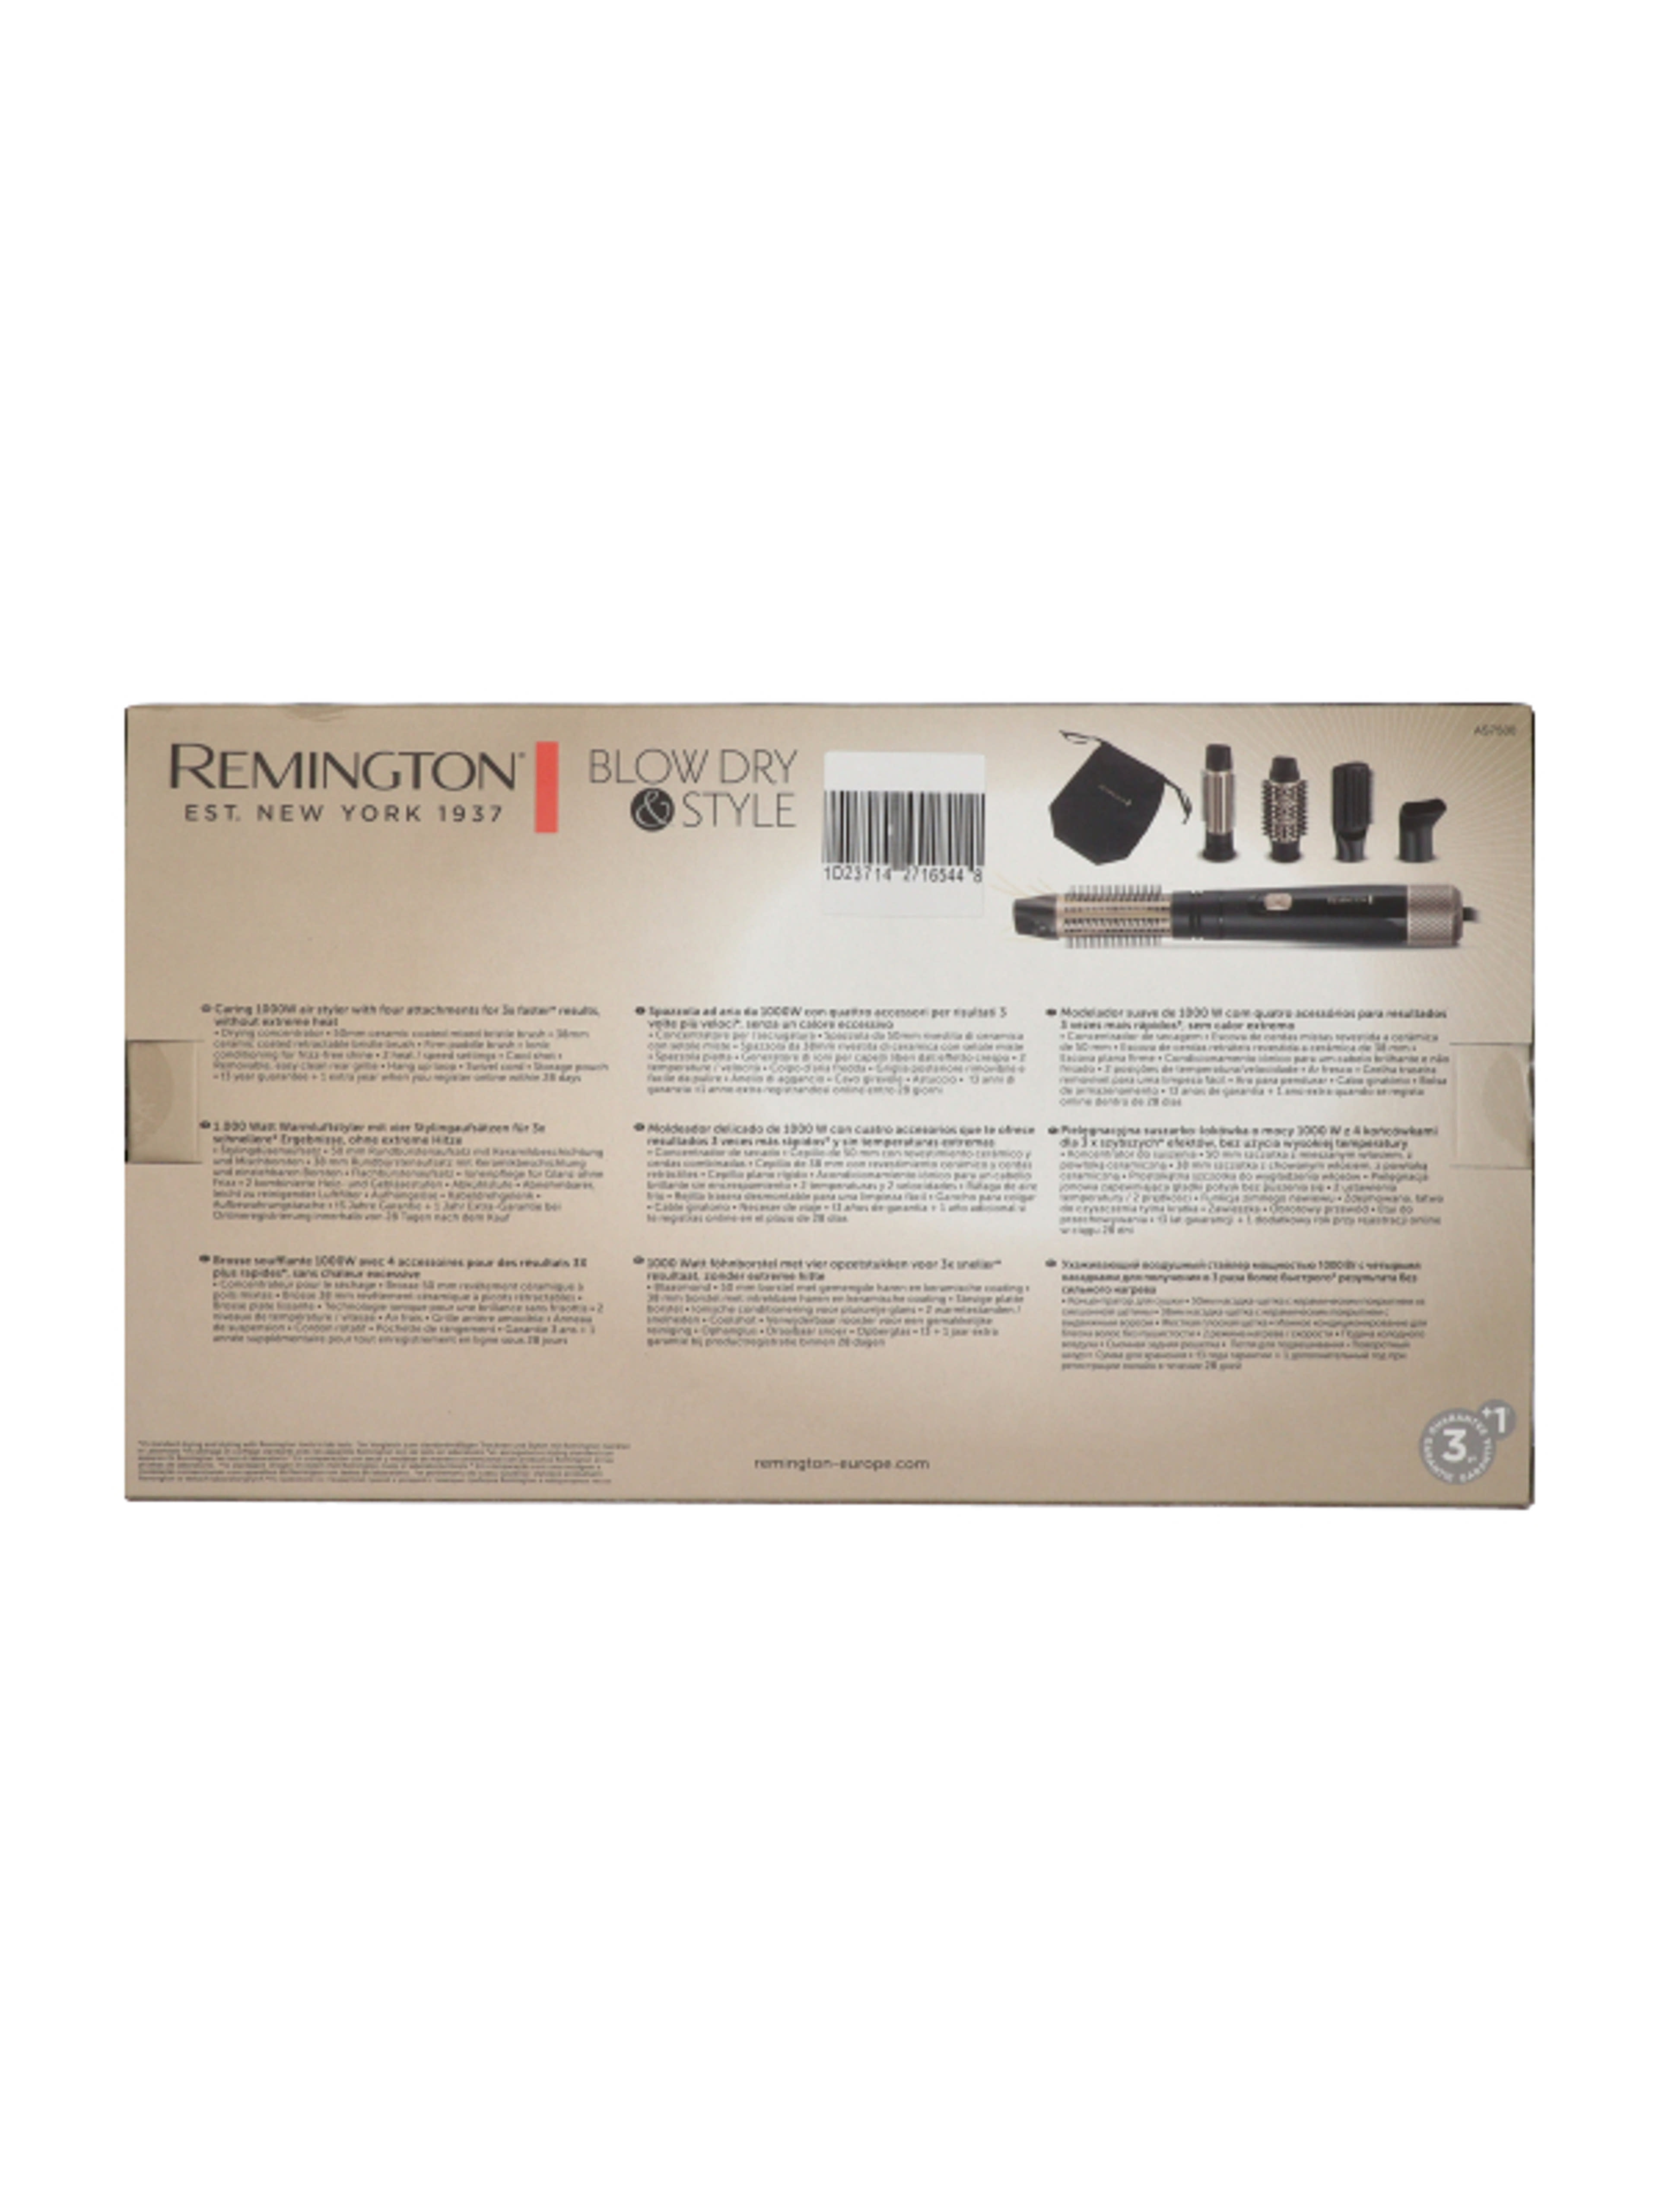 Remington Blow Dry&Style meleglevegős hajformázó készülék - 1 db-3